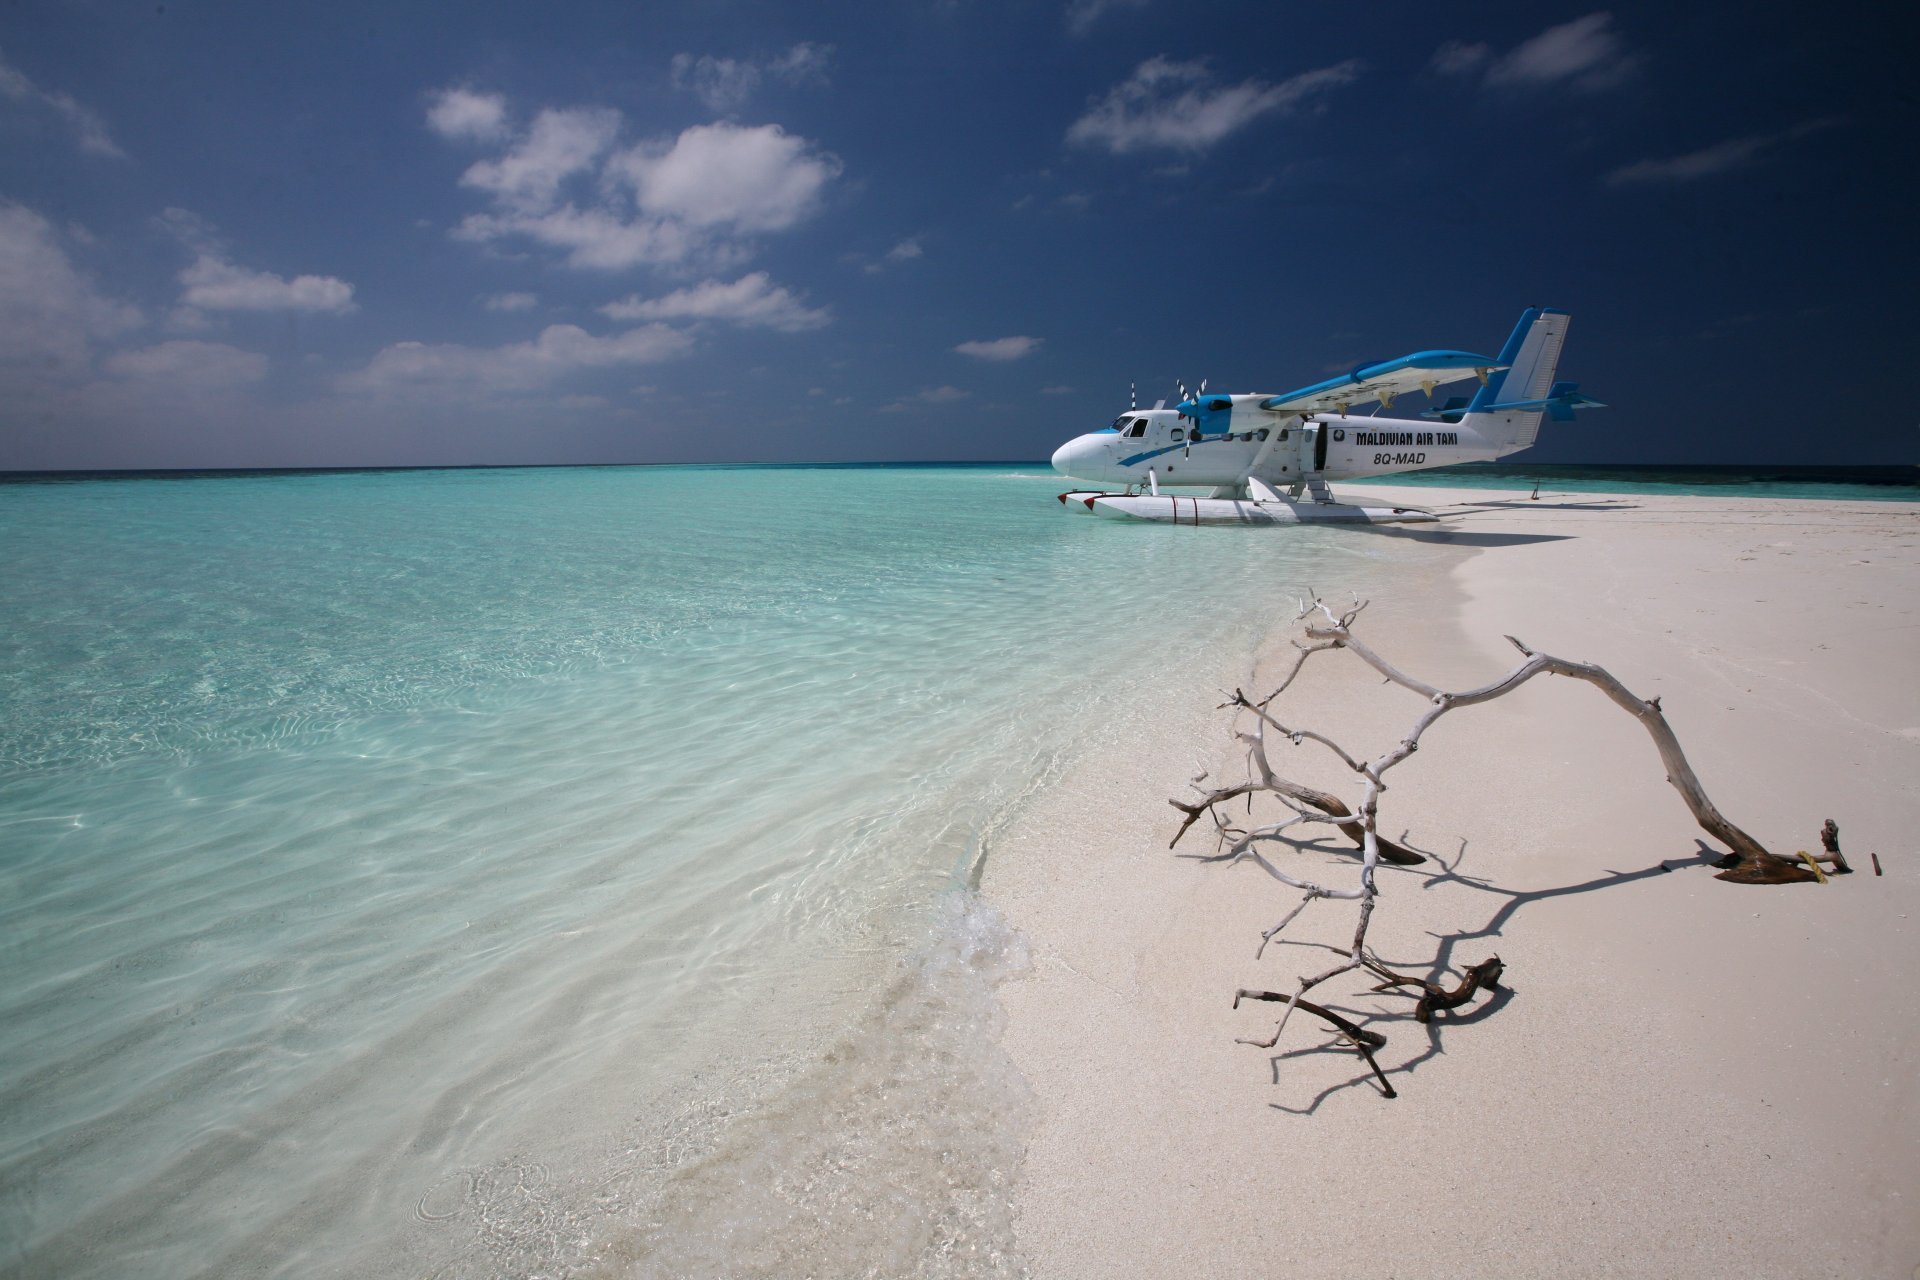 免费照片马尔代夫的水上飞机图片